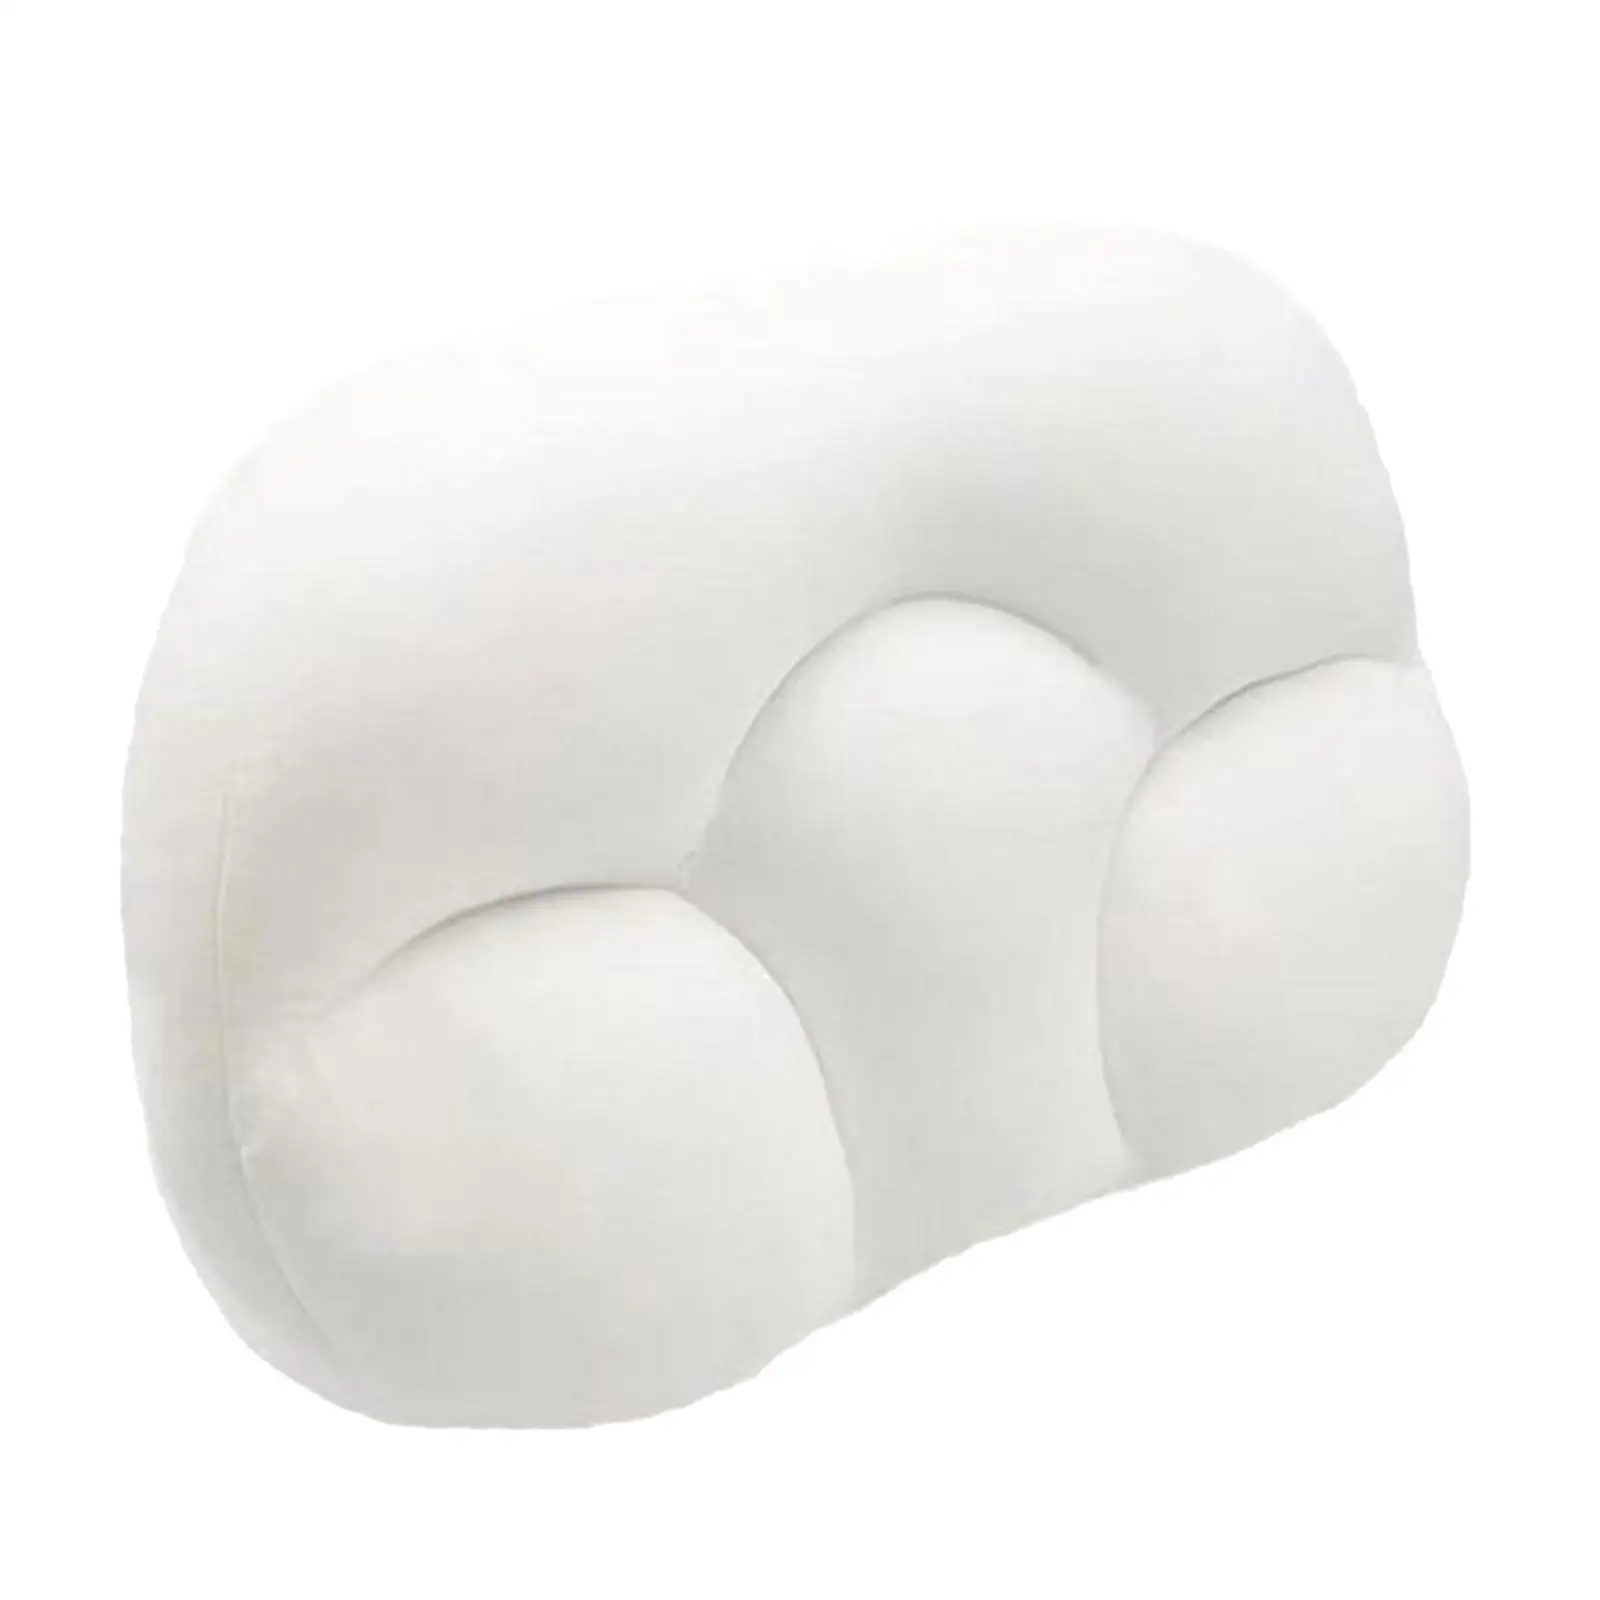 3D Pillow Foam Sleep Pillow Egg Sleepers Memory Foam Bedding Neck Protection